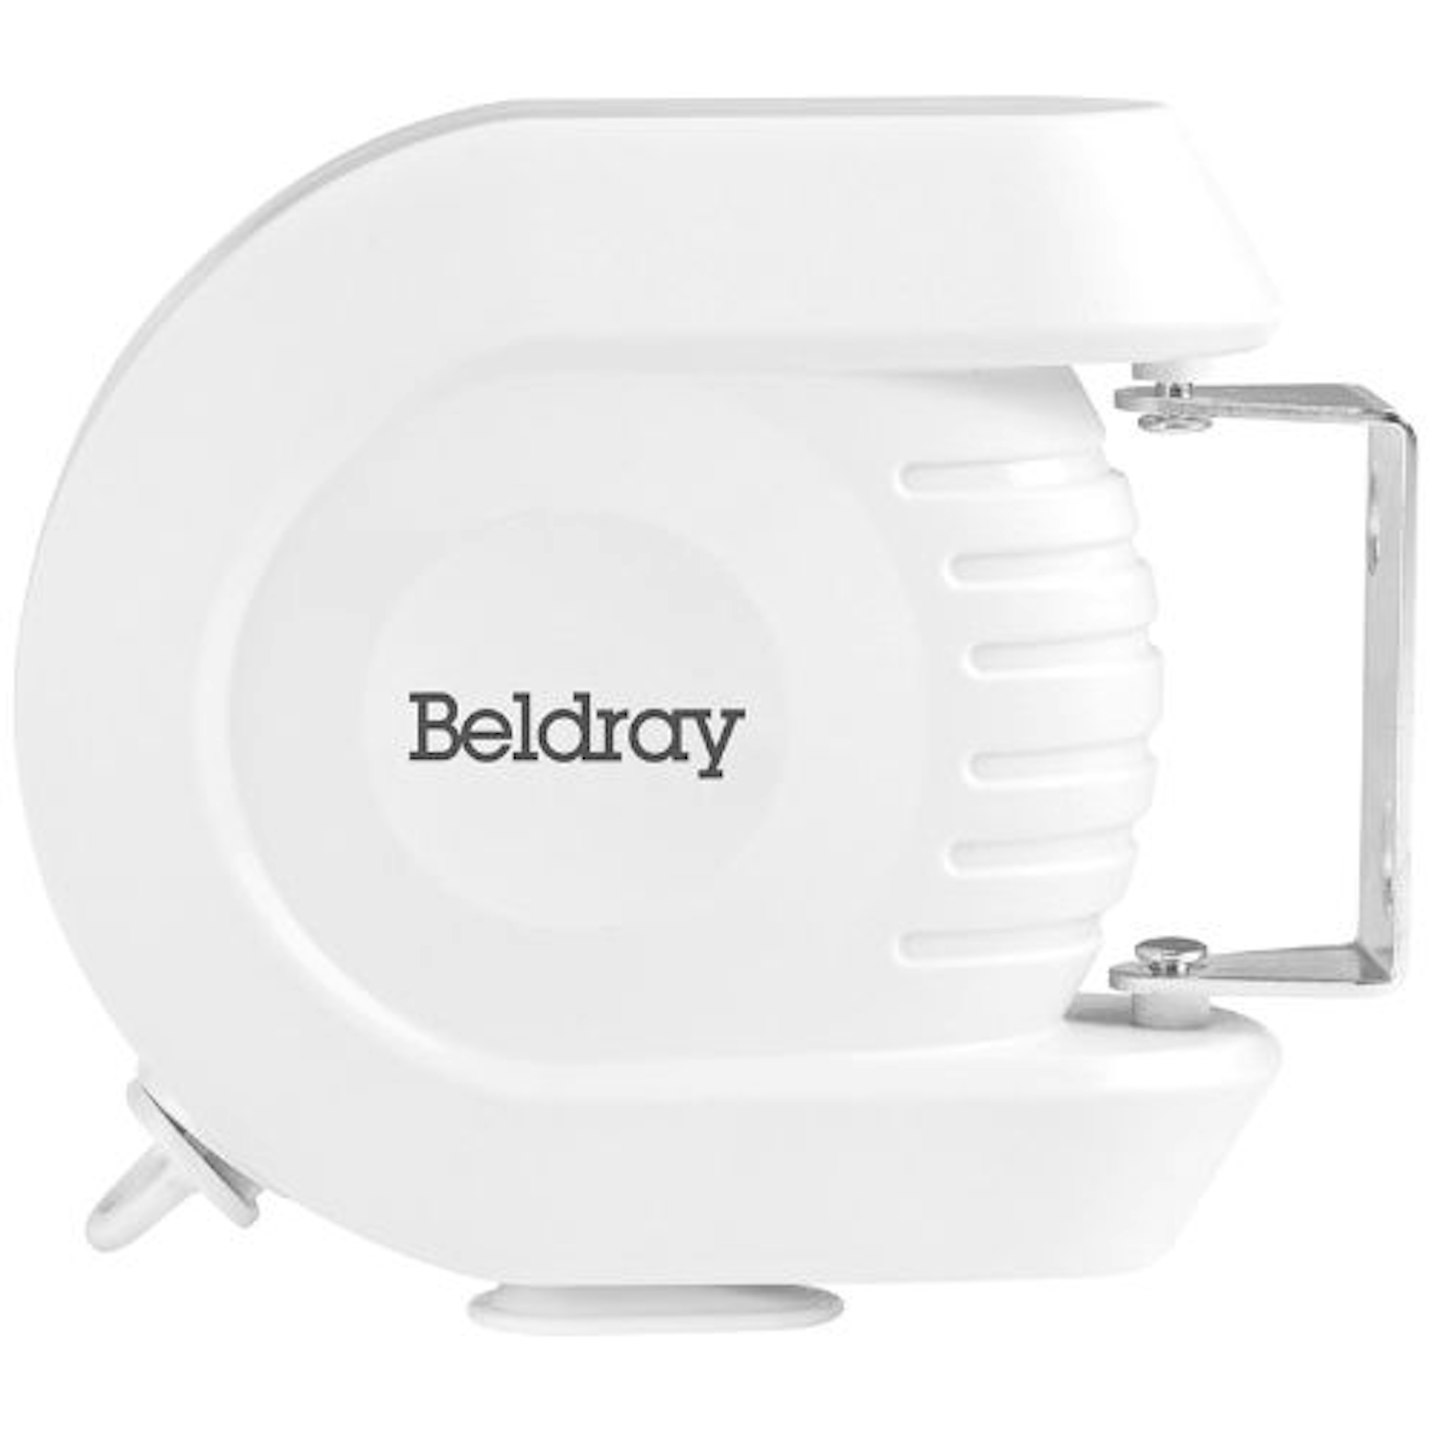 Beldray LA026996 Retractable Washing Line